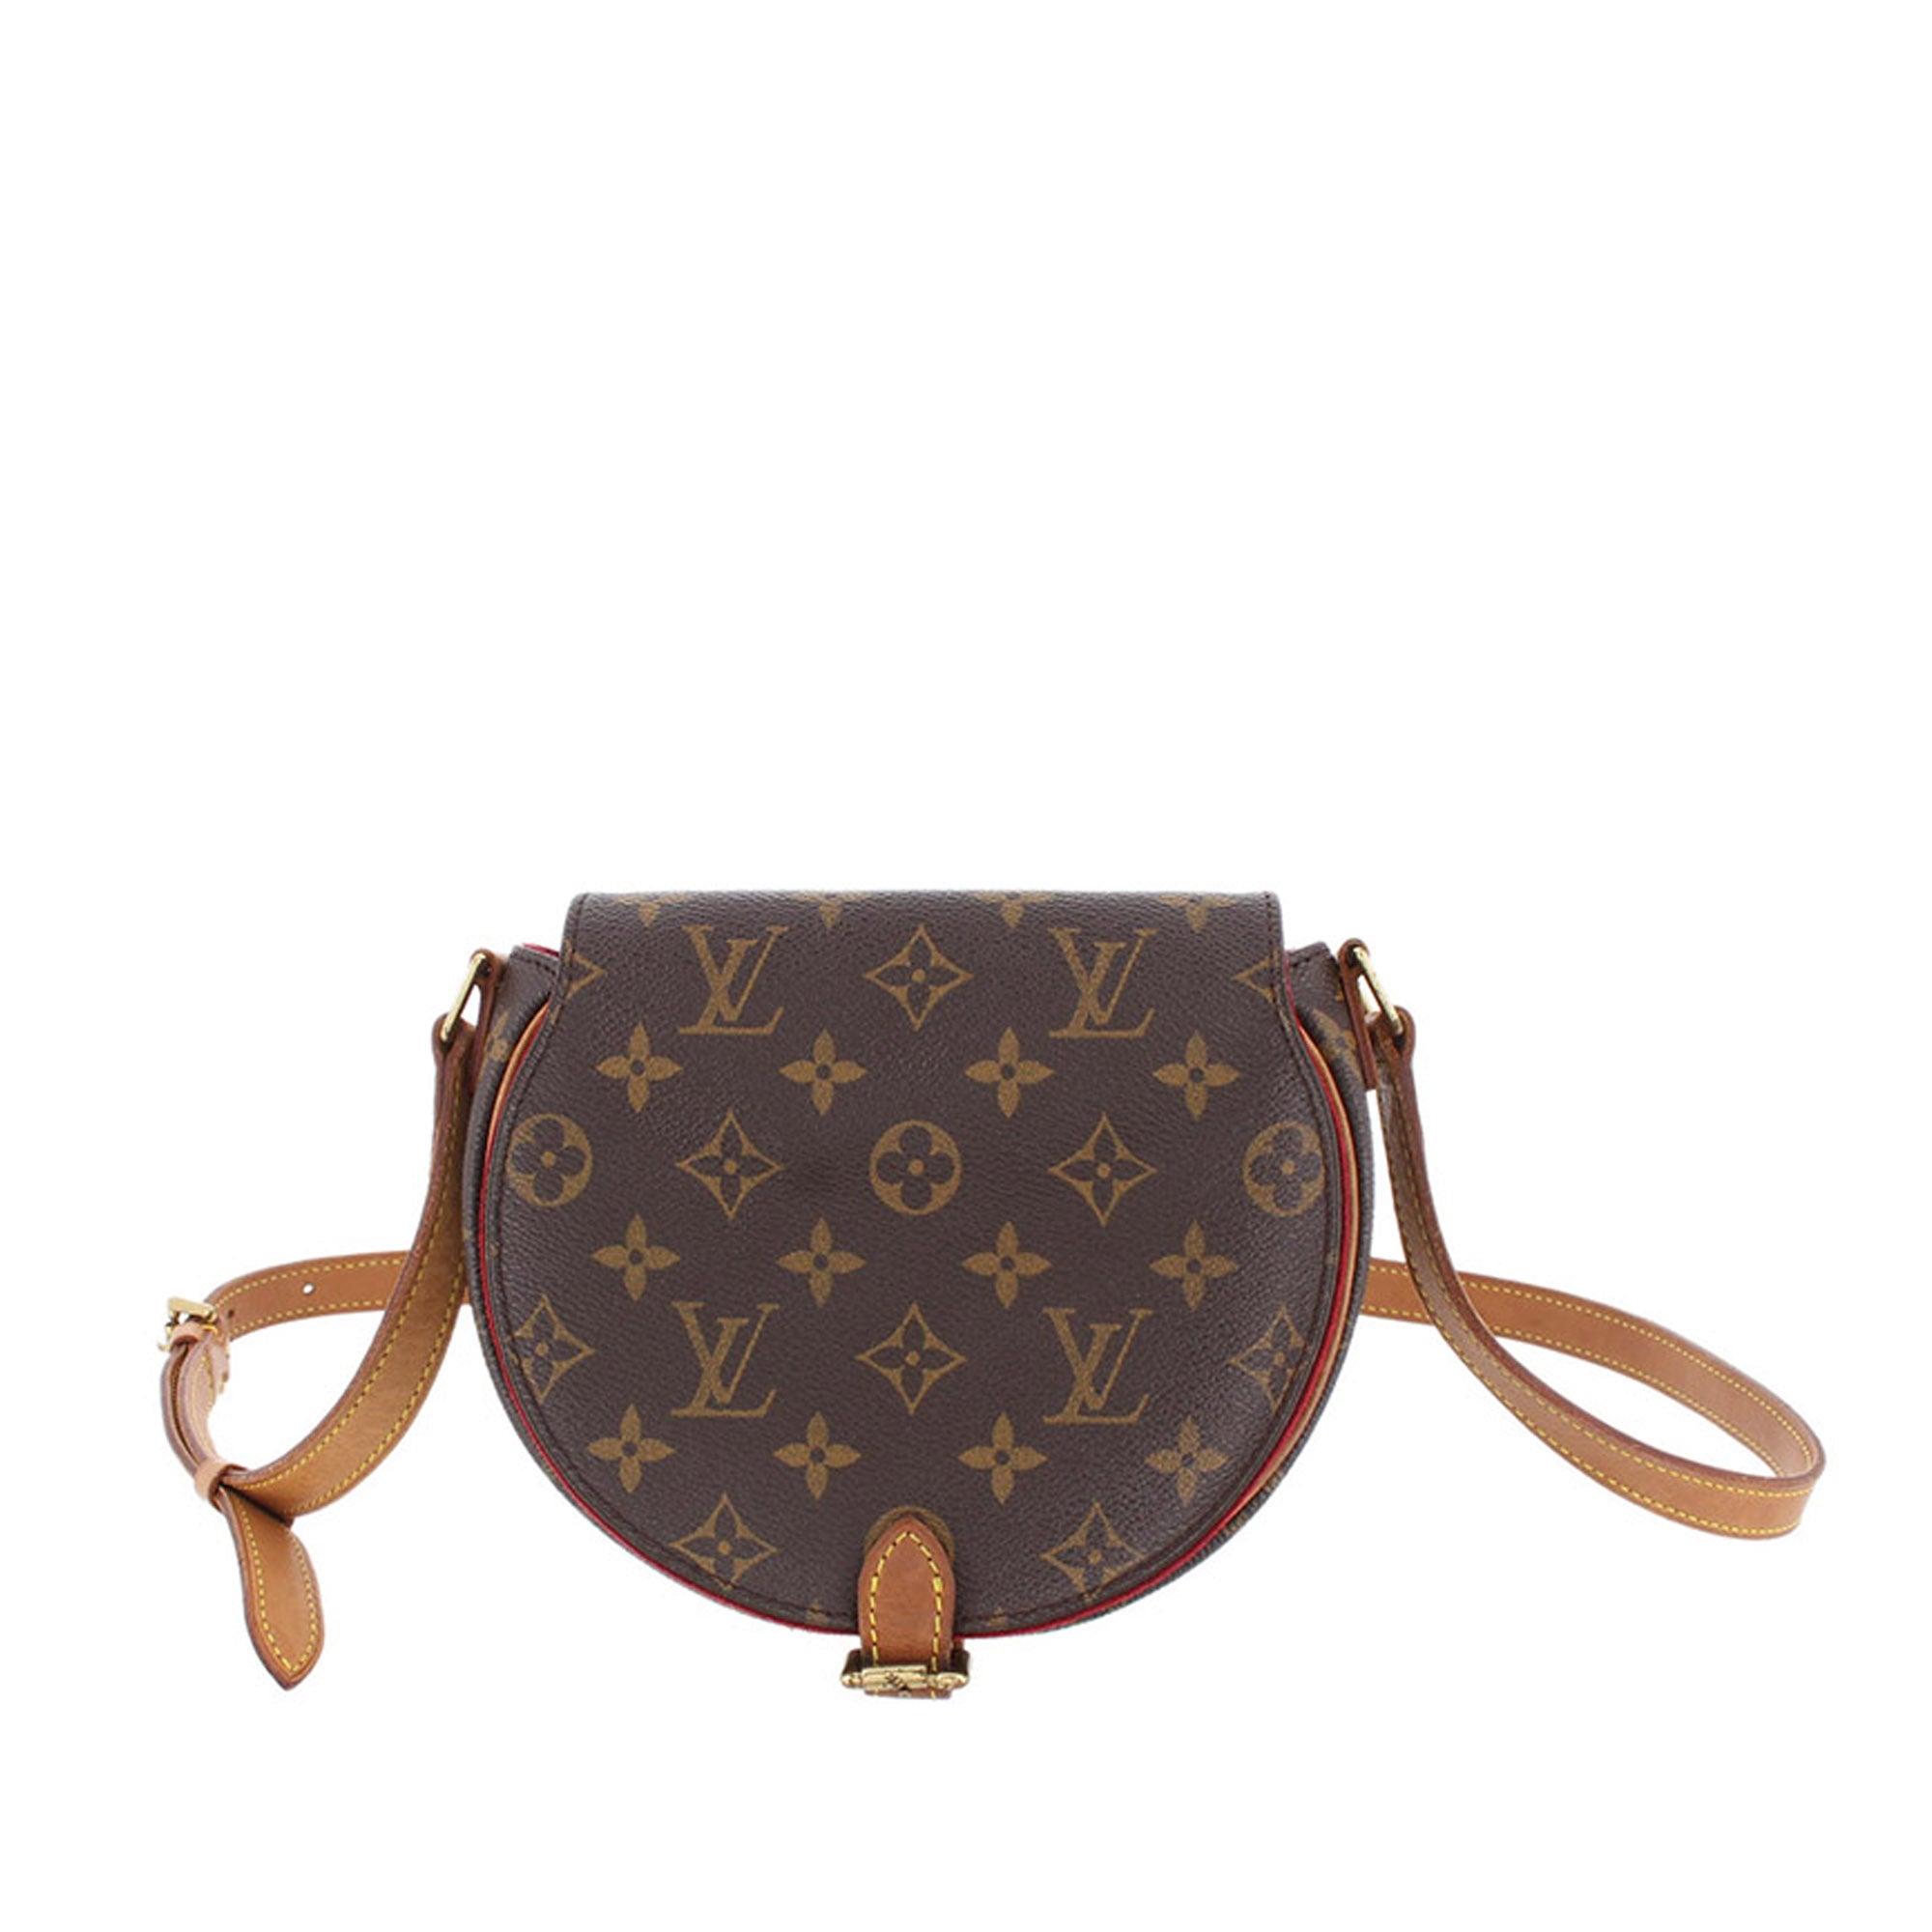 Louis Vuitton Brooklyn MM Damier Ebene Messenger Bag Discontinued